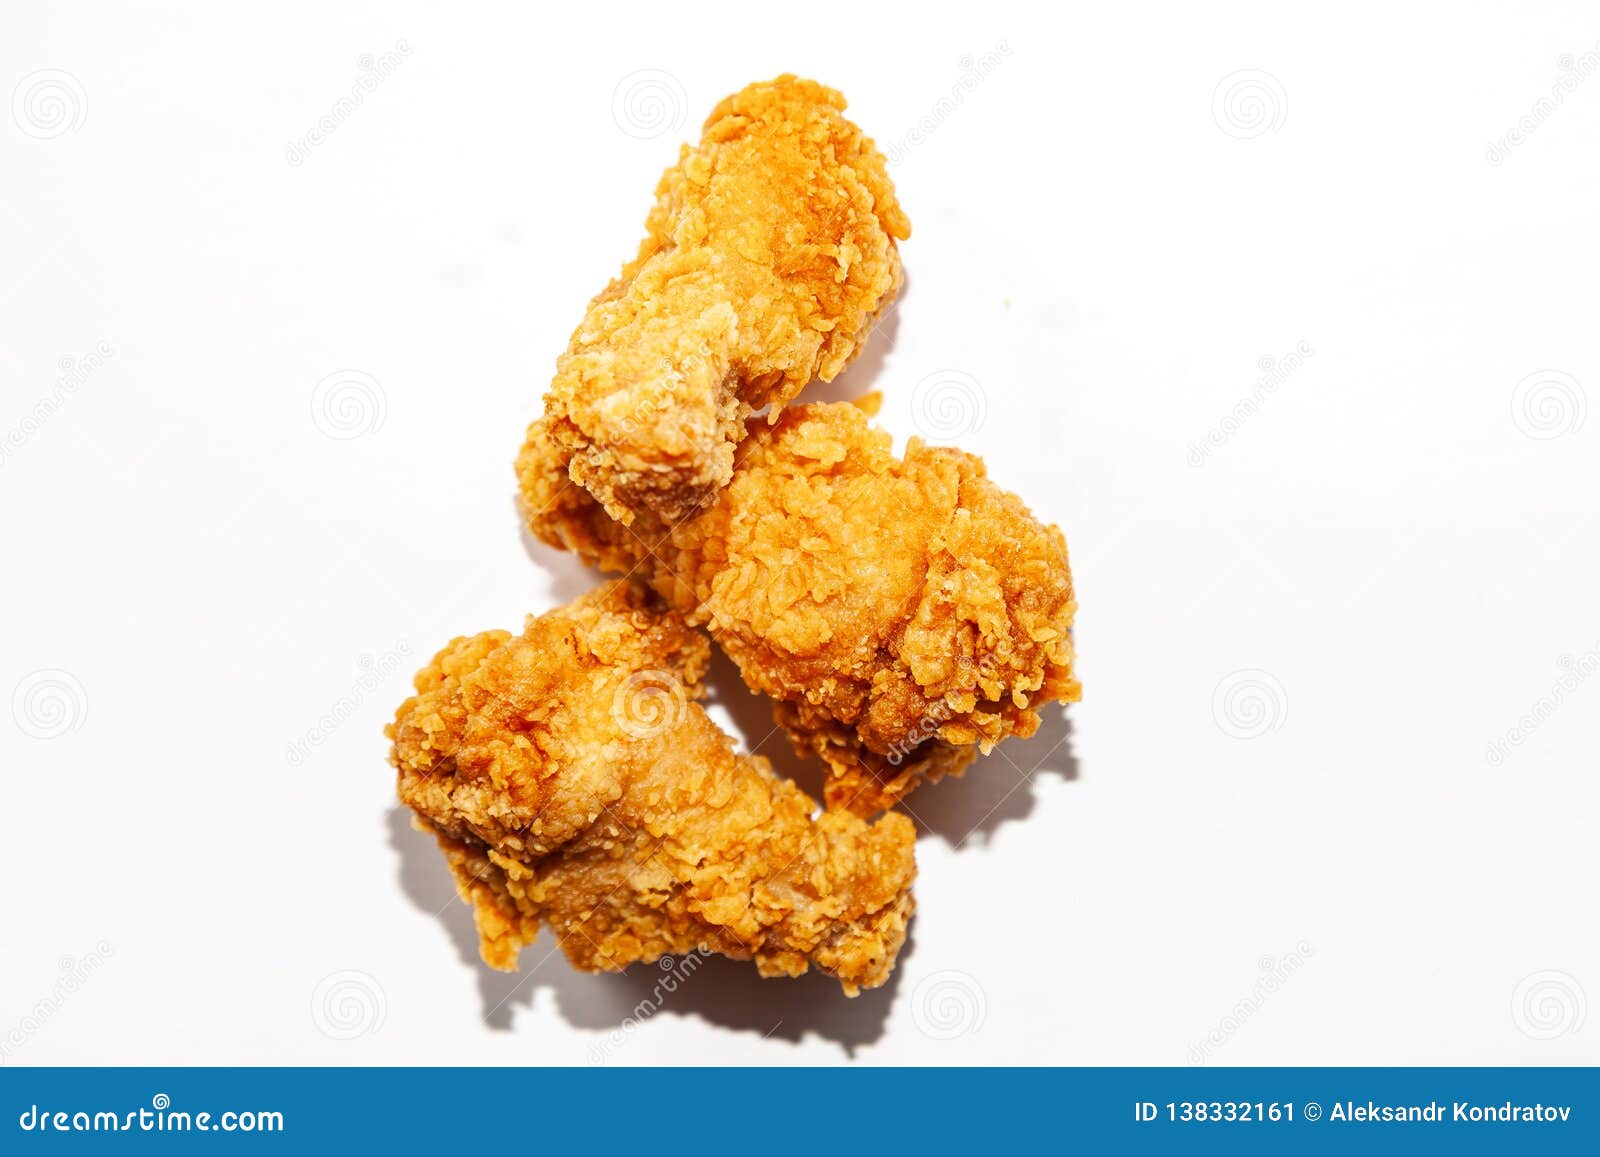 Τηγανισμένος στόμα-ποτίζοντας τρία φτερά κοτόπουλου σε μια πικάντικους σάλτσα και έναν καφετή που πασπαλίζονται με ψίχουλα σε μια χούφτα που απομονώνεται σε ένα άσπρο υπόβαθρο, ανθυγειινό λιπαρό γρήγορο φαγητό